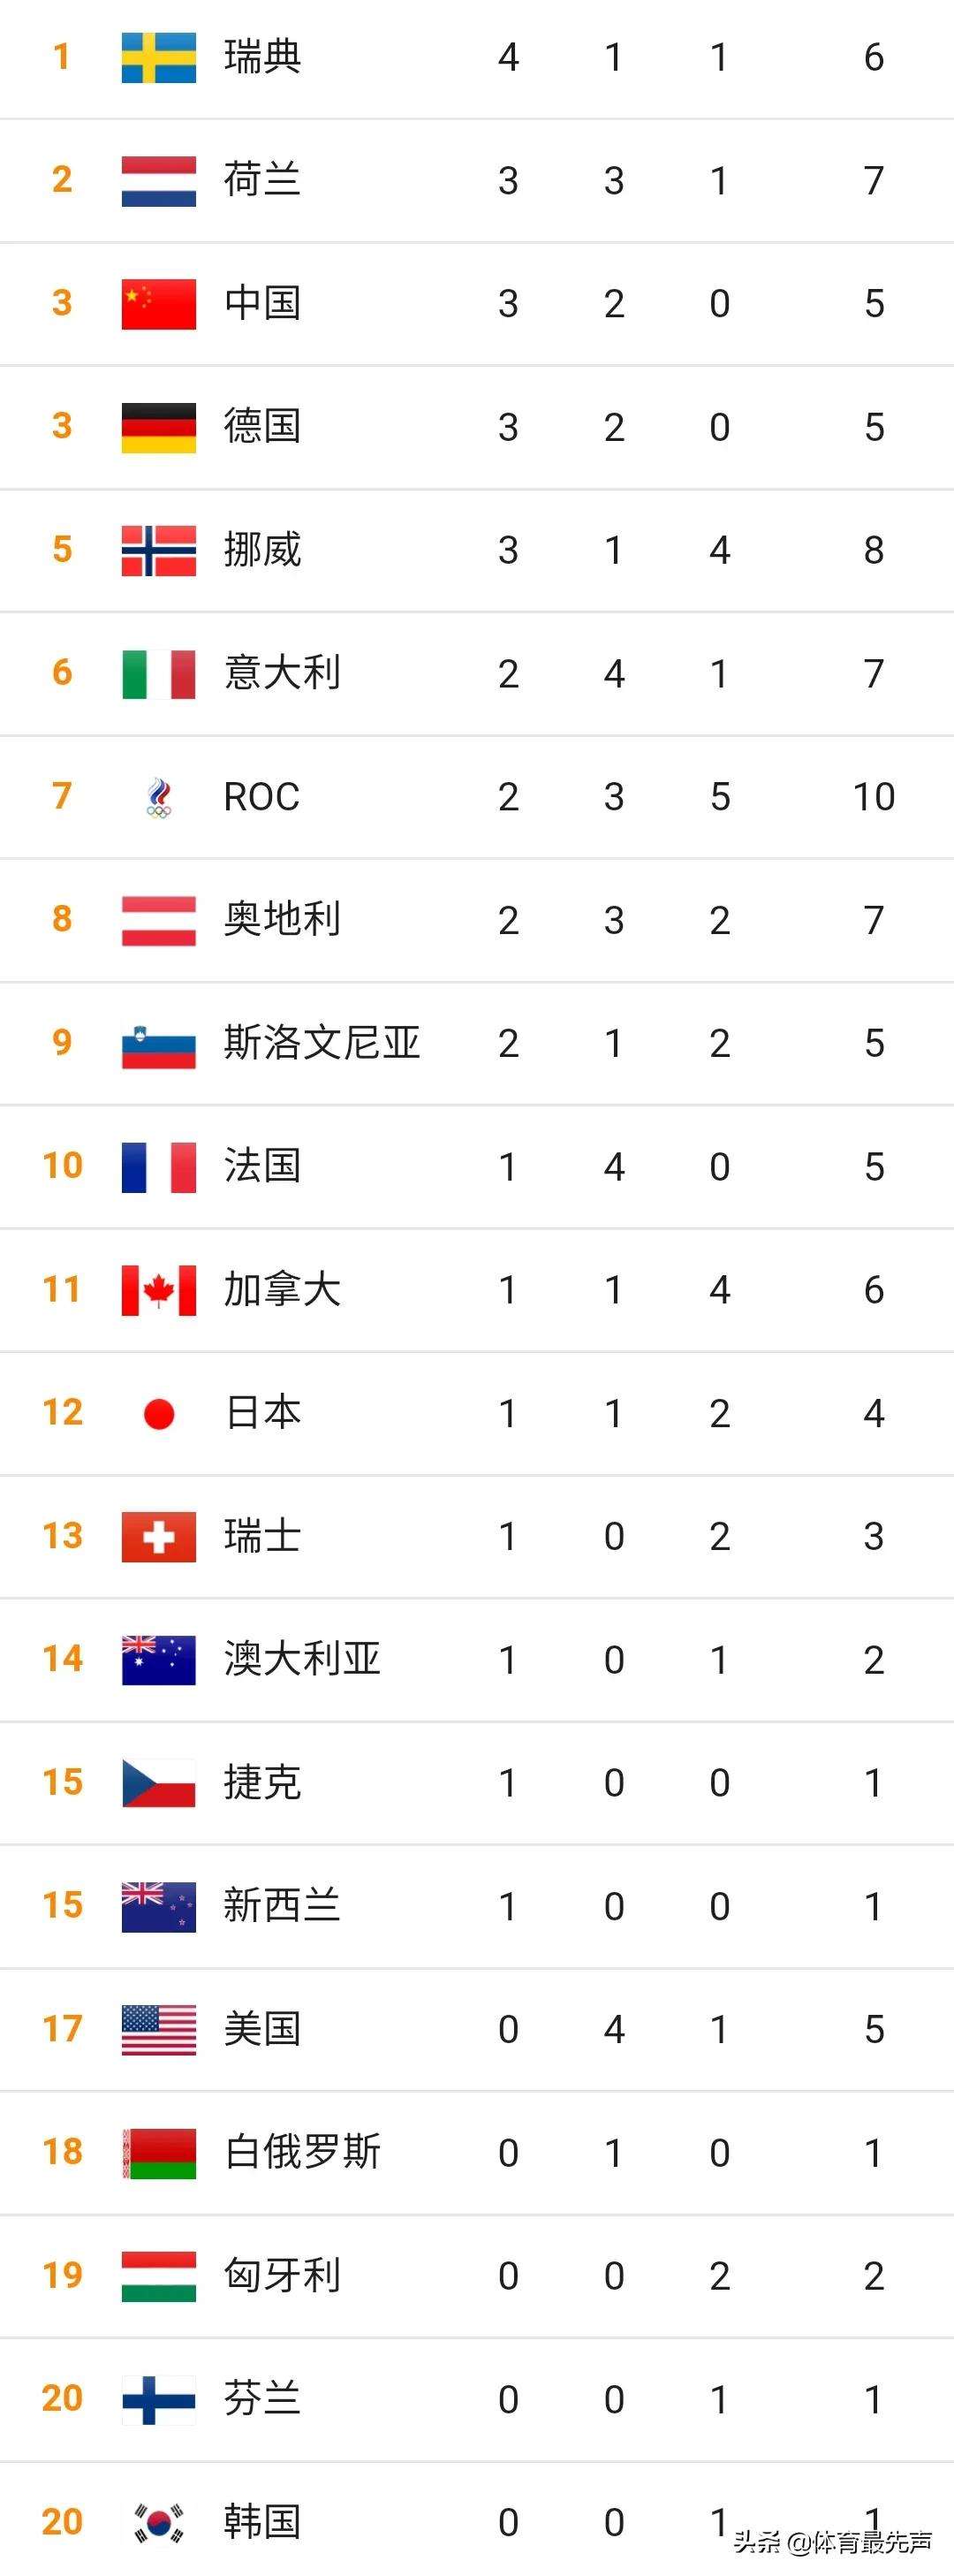 冬奥会中国金牌榜 冬奥会中国金牌榜第几